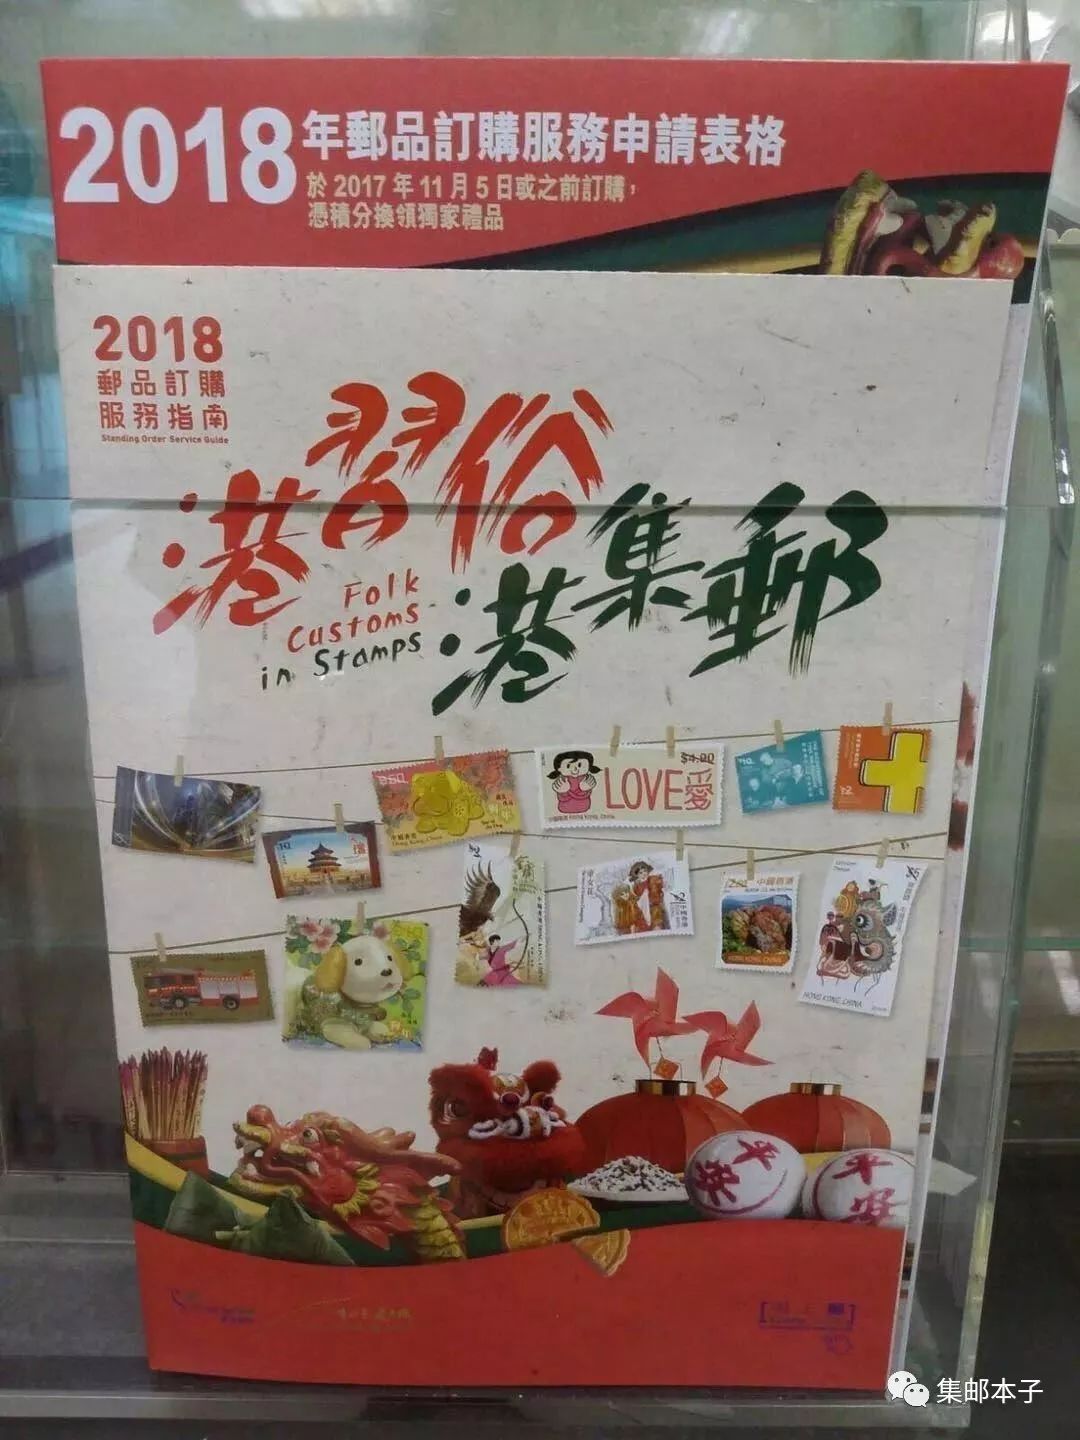 《改革开放四十周年》纪念邮票发行 -搜狐大视野-搜狐新闻